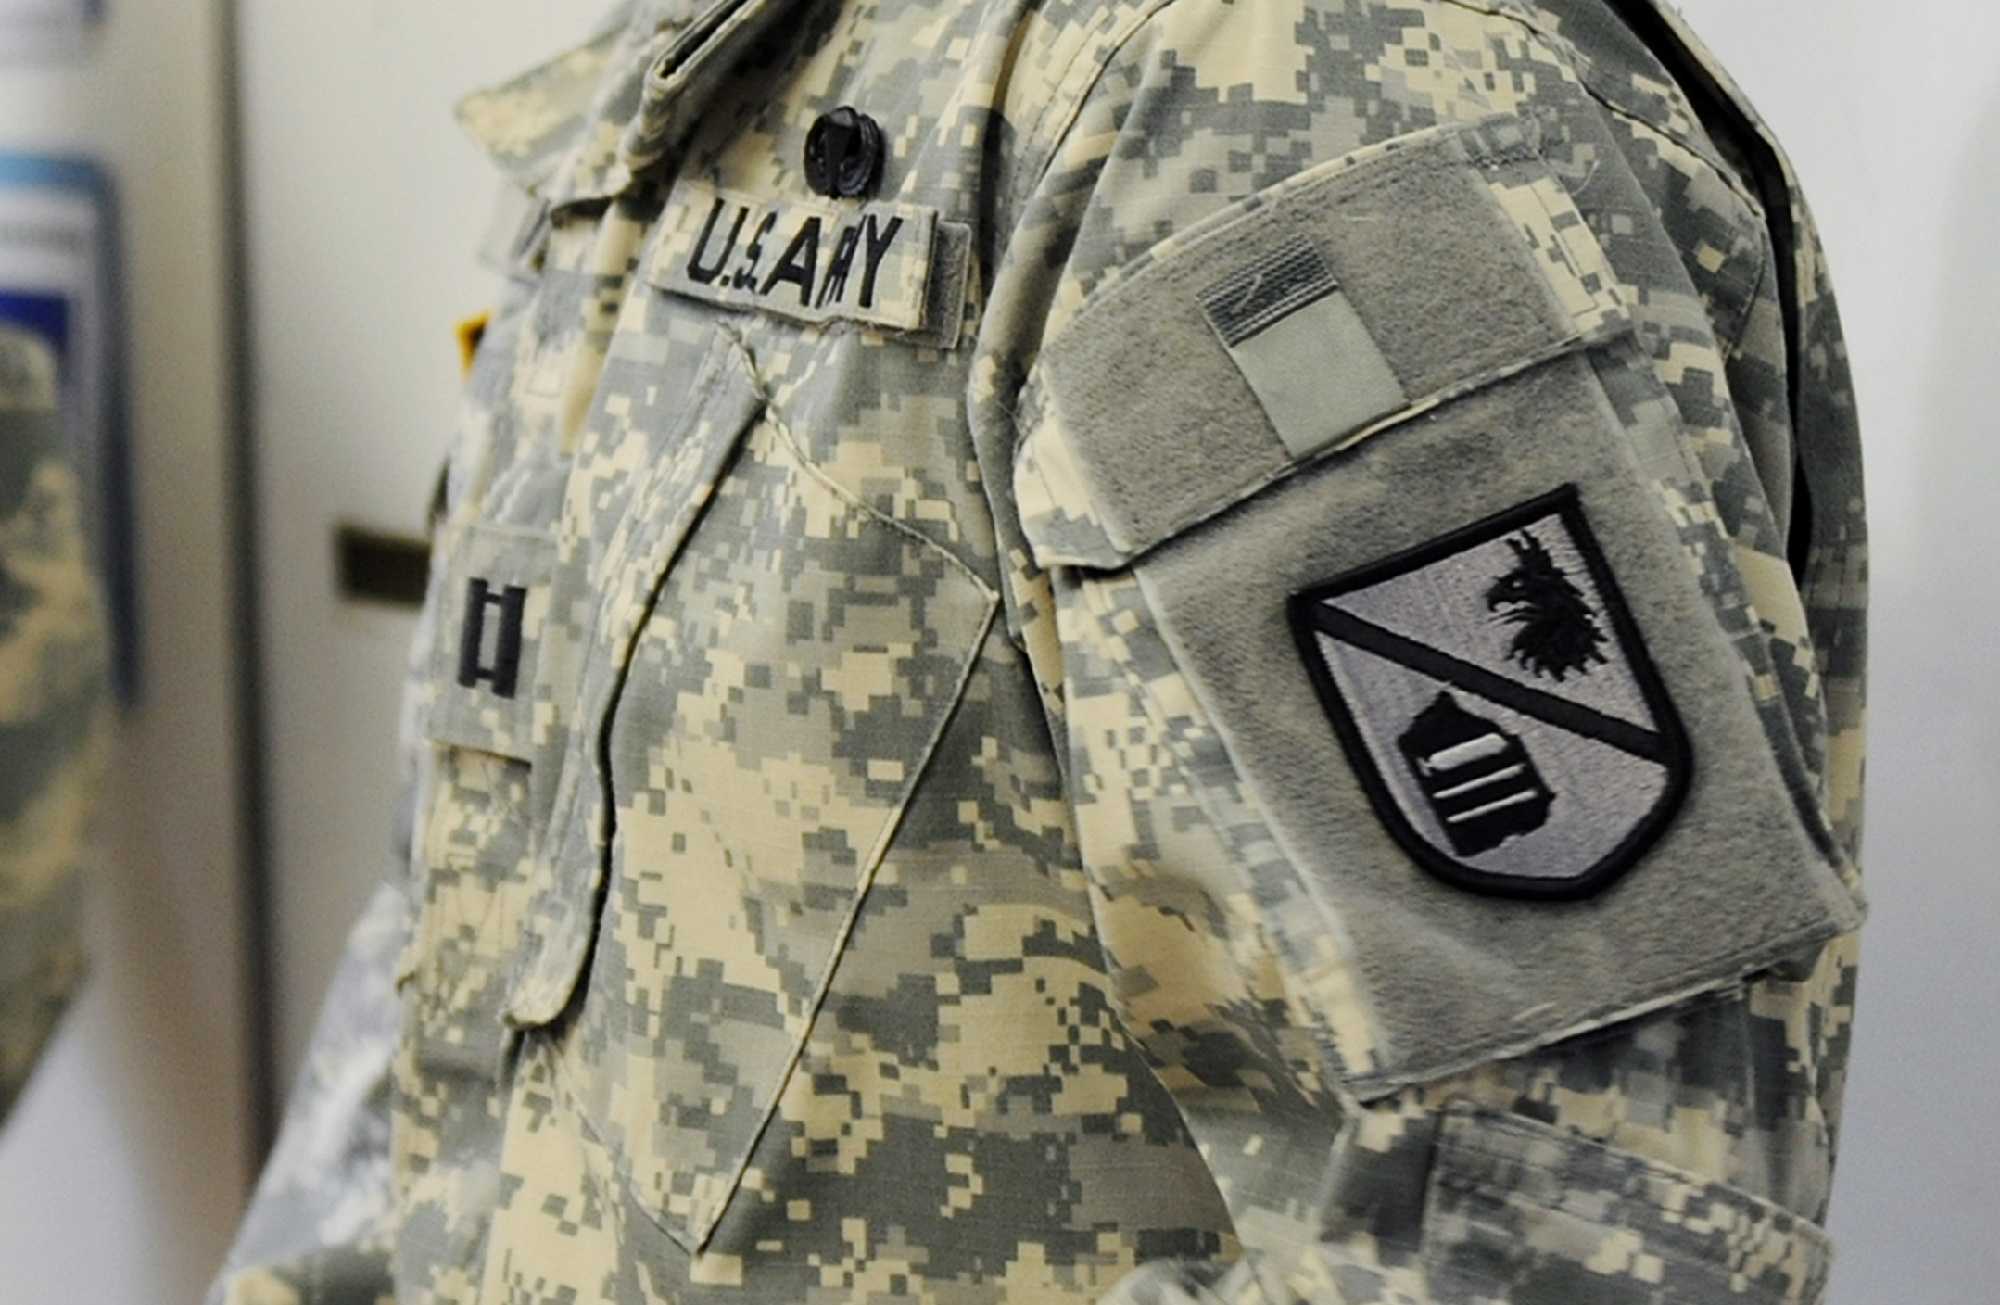 Usa Army Sex